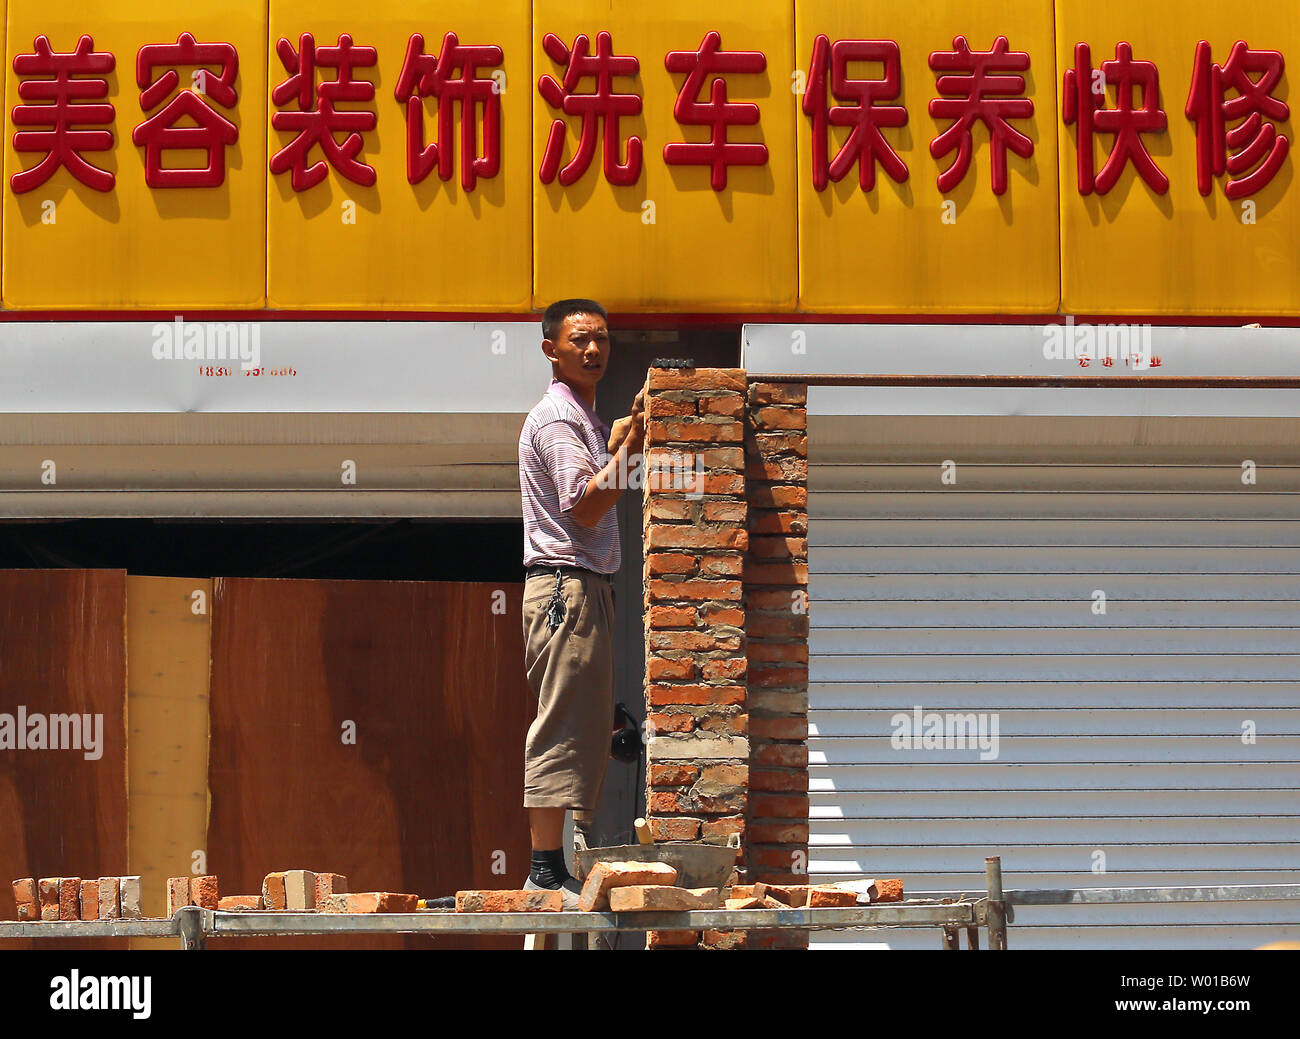 Ein chinesischer Arbeiter baut eine Mauer zwischen zwei Garagen im Zentrum von Peking am 27. Juni 2016. Turbulenzen unleashed von dem Britischen Abstimmung auf die Europäische Union (EU) verlassen erhöhte Ängste in Asien mit China, Japan und Südkorea alle über das finanzielle Risiko für ihre Volkswirtschaften alarmiert. Chinas Finanzminister sagte Fallout aus der vergangenen Woche Referendum" wird ein Schatten über der globalen Wirtschaft" werfen. Foto von Stephen Rasierer/UPI Stockfoto